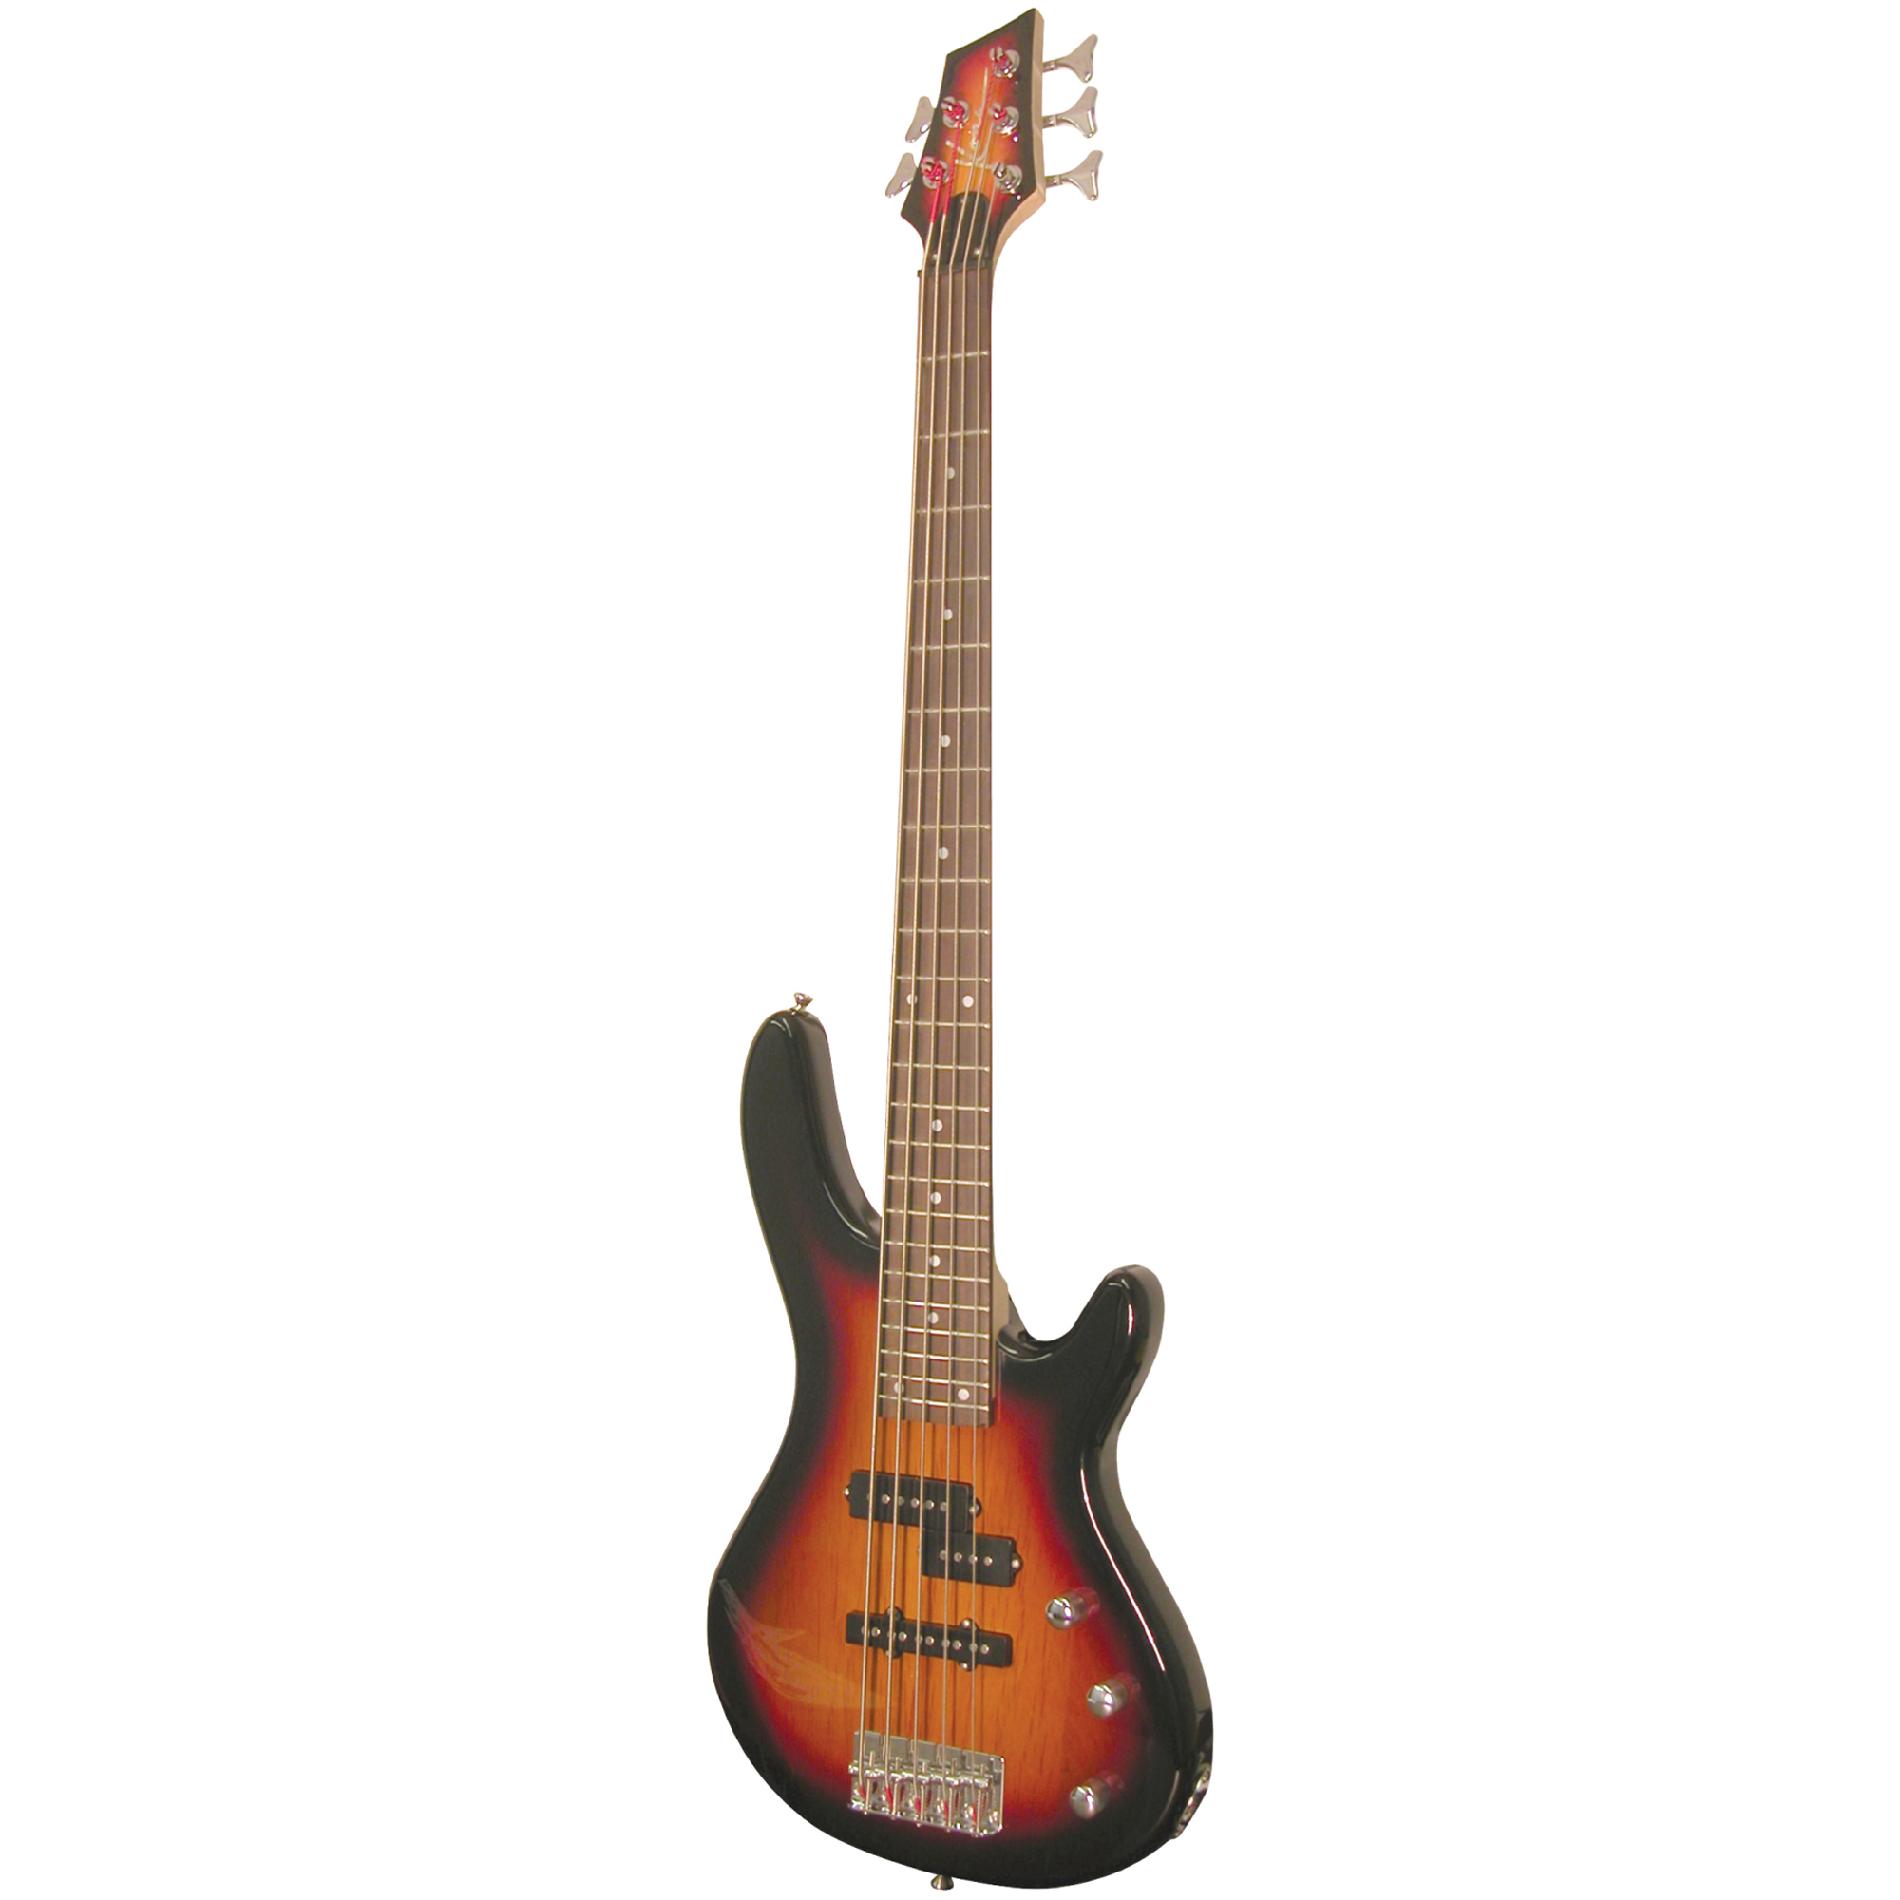 Kona 5 String Electric Bass in High-Gloss Sunburst Finish